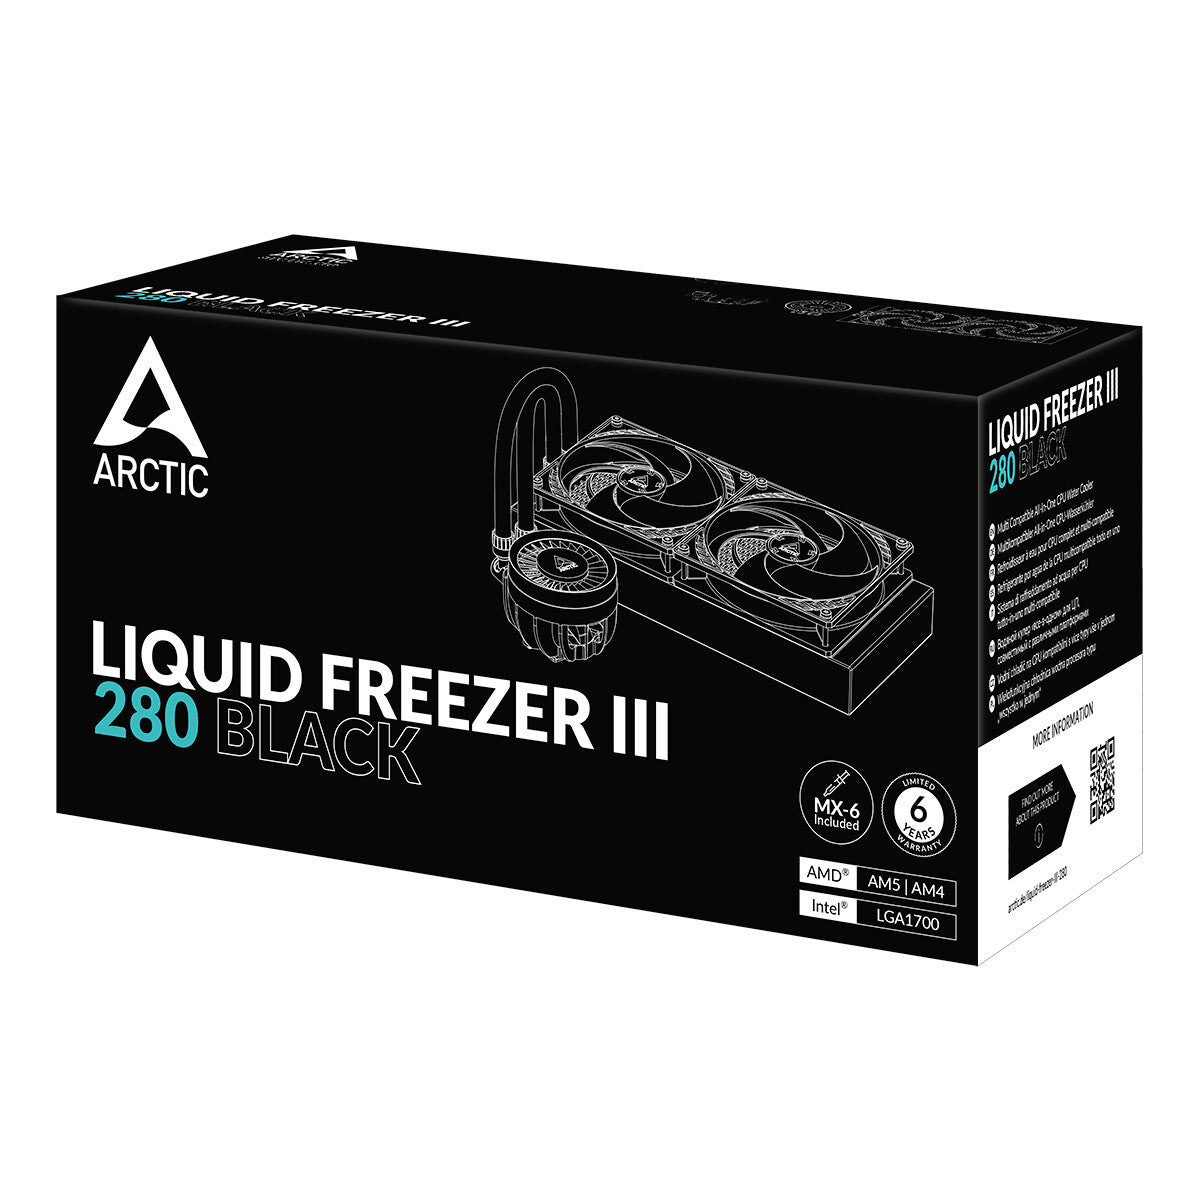 ARCTIC Liquid Freezer III 280 - All-in-One Liquid Processor Cooler in Black - 280mm